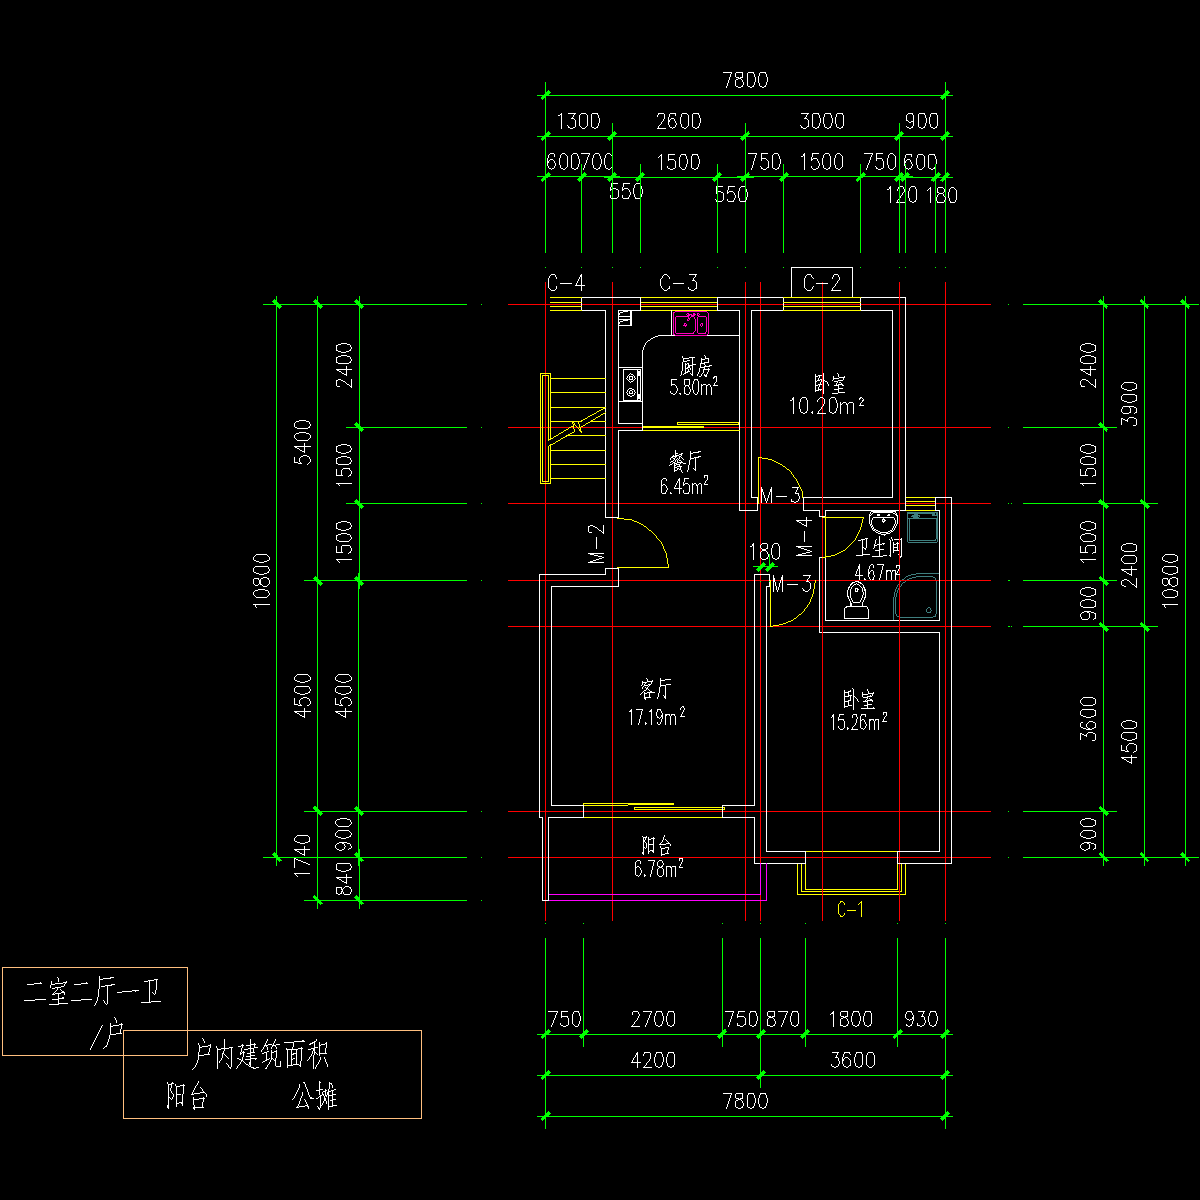 板式多层单户二室二厅一卫户型CAD图纸(81)